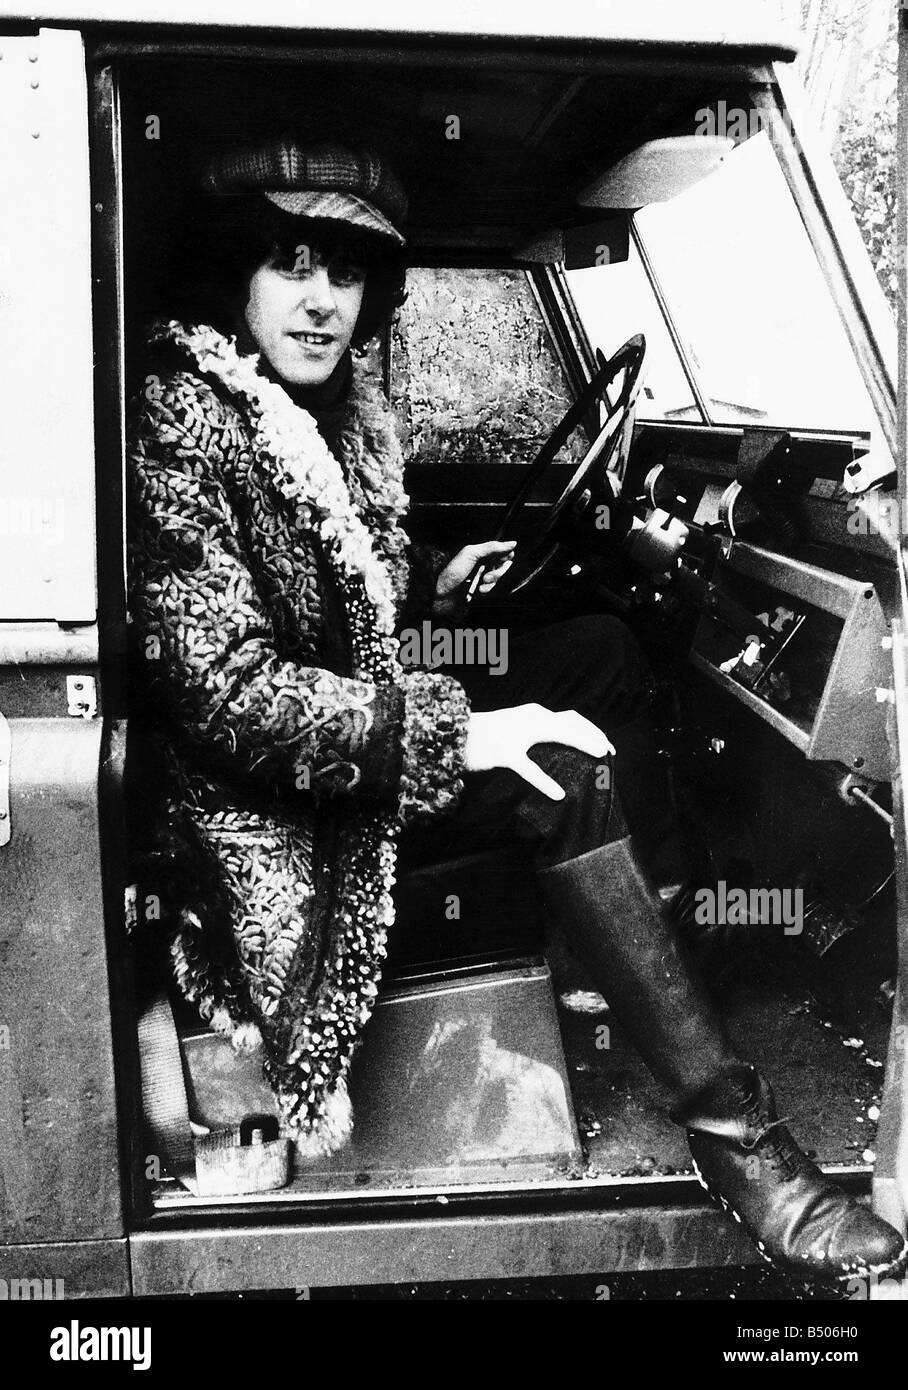 Donovan Sänger Schauspieler sitzt am Steuer eines Autos Stockfoto